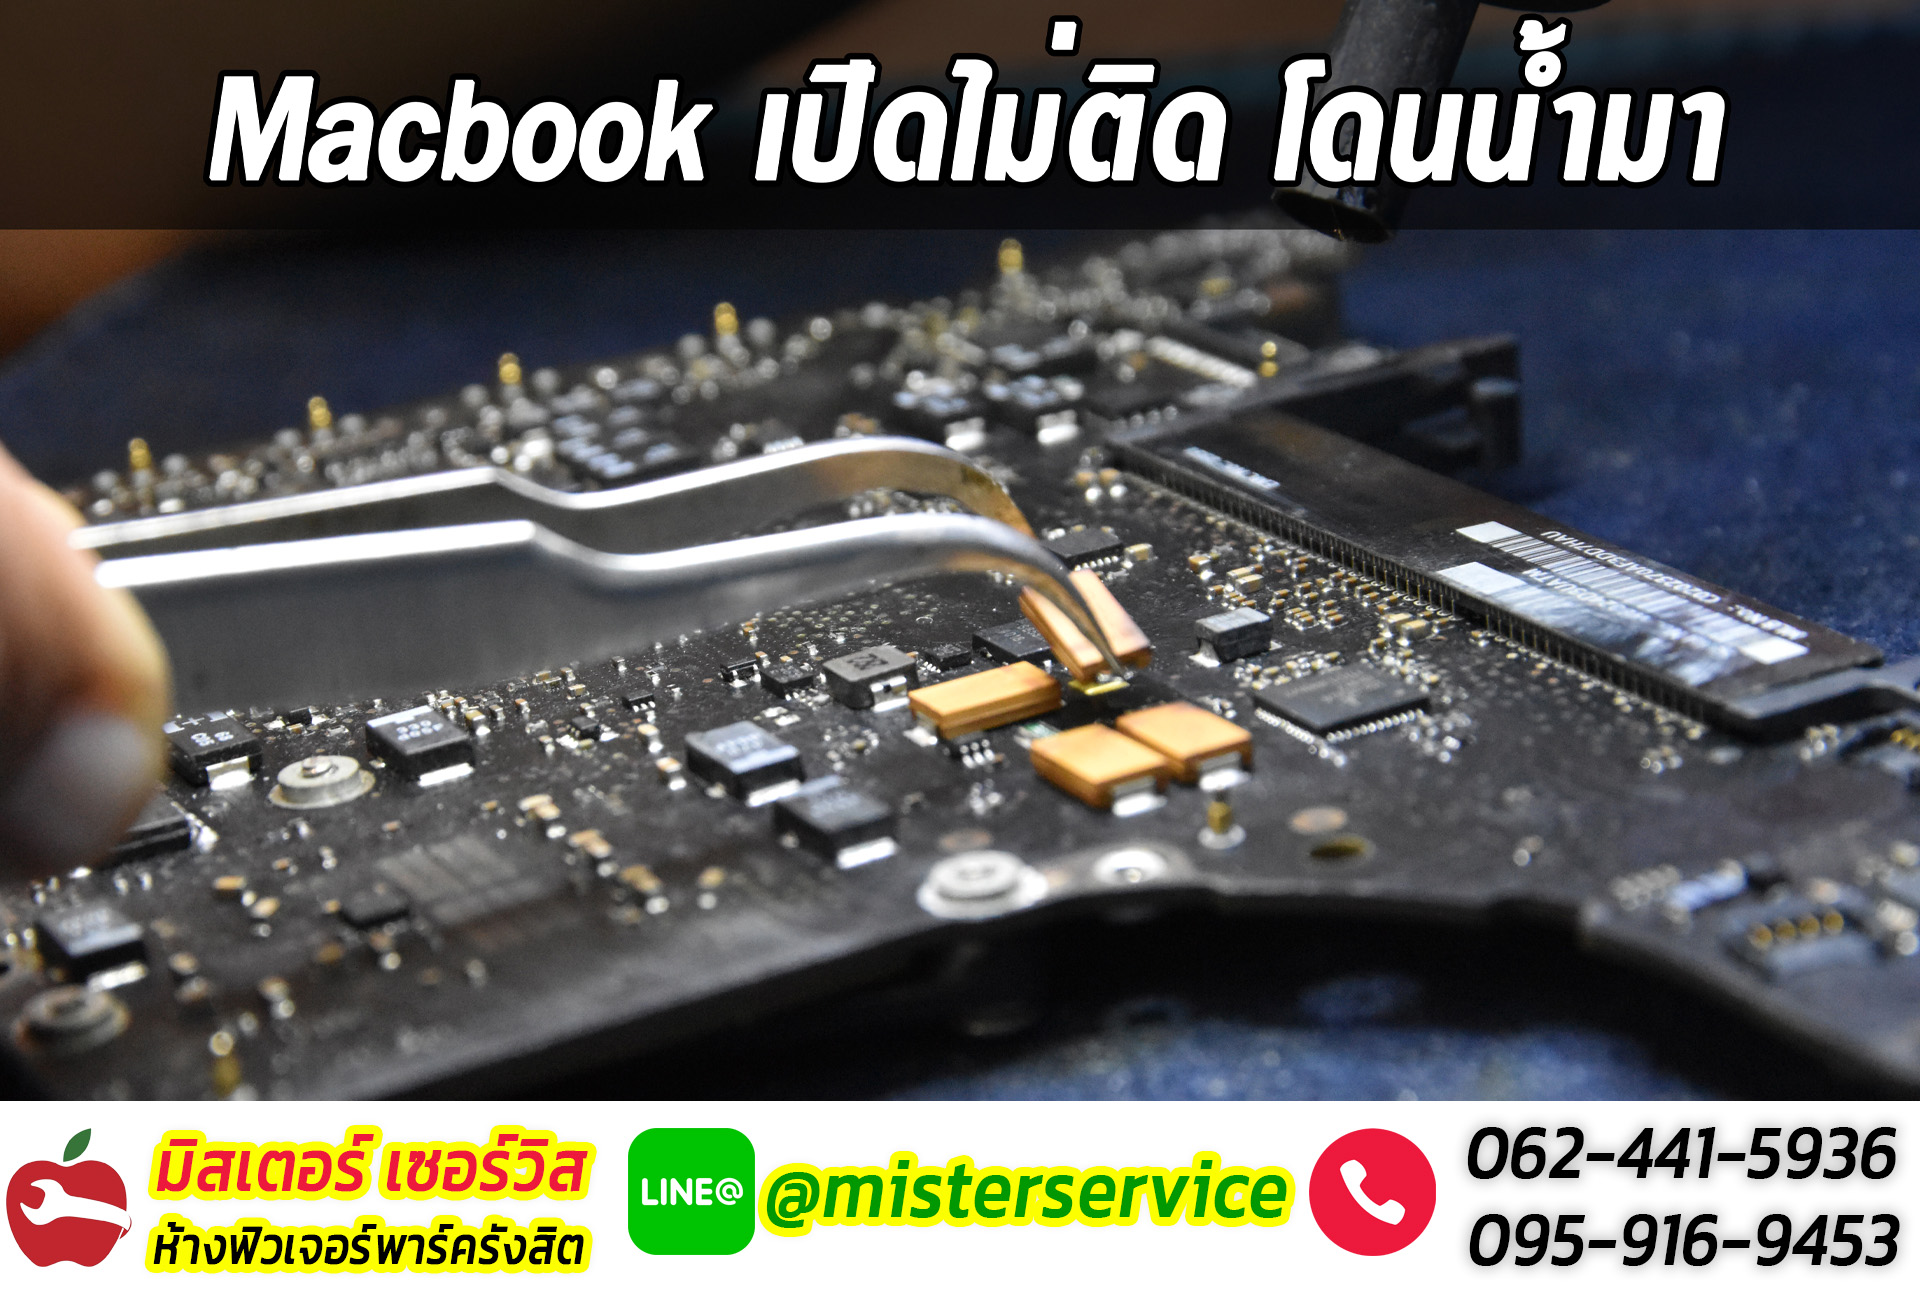 ซ่อม macbook มุกดาหาร